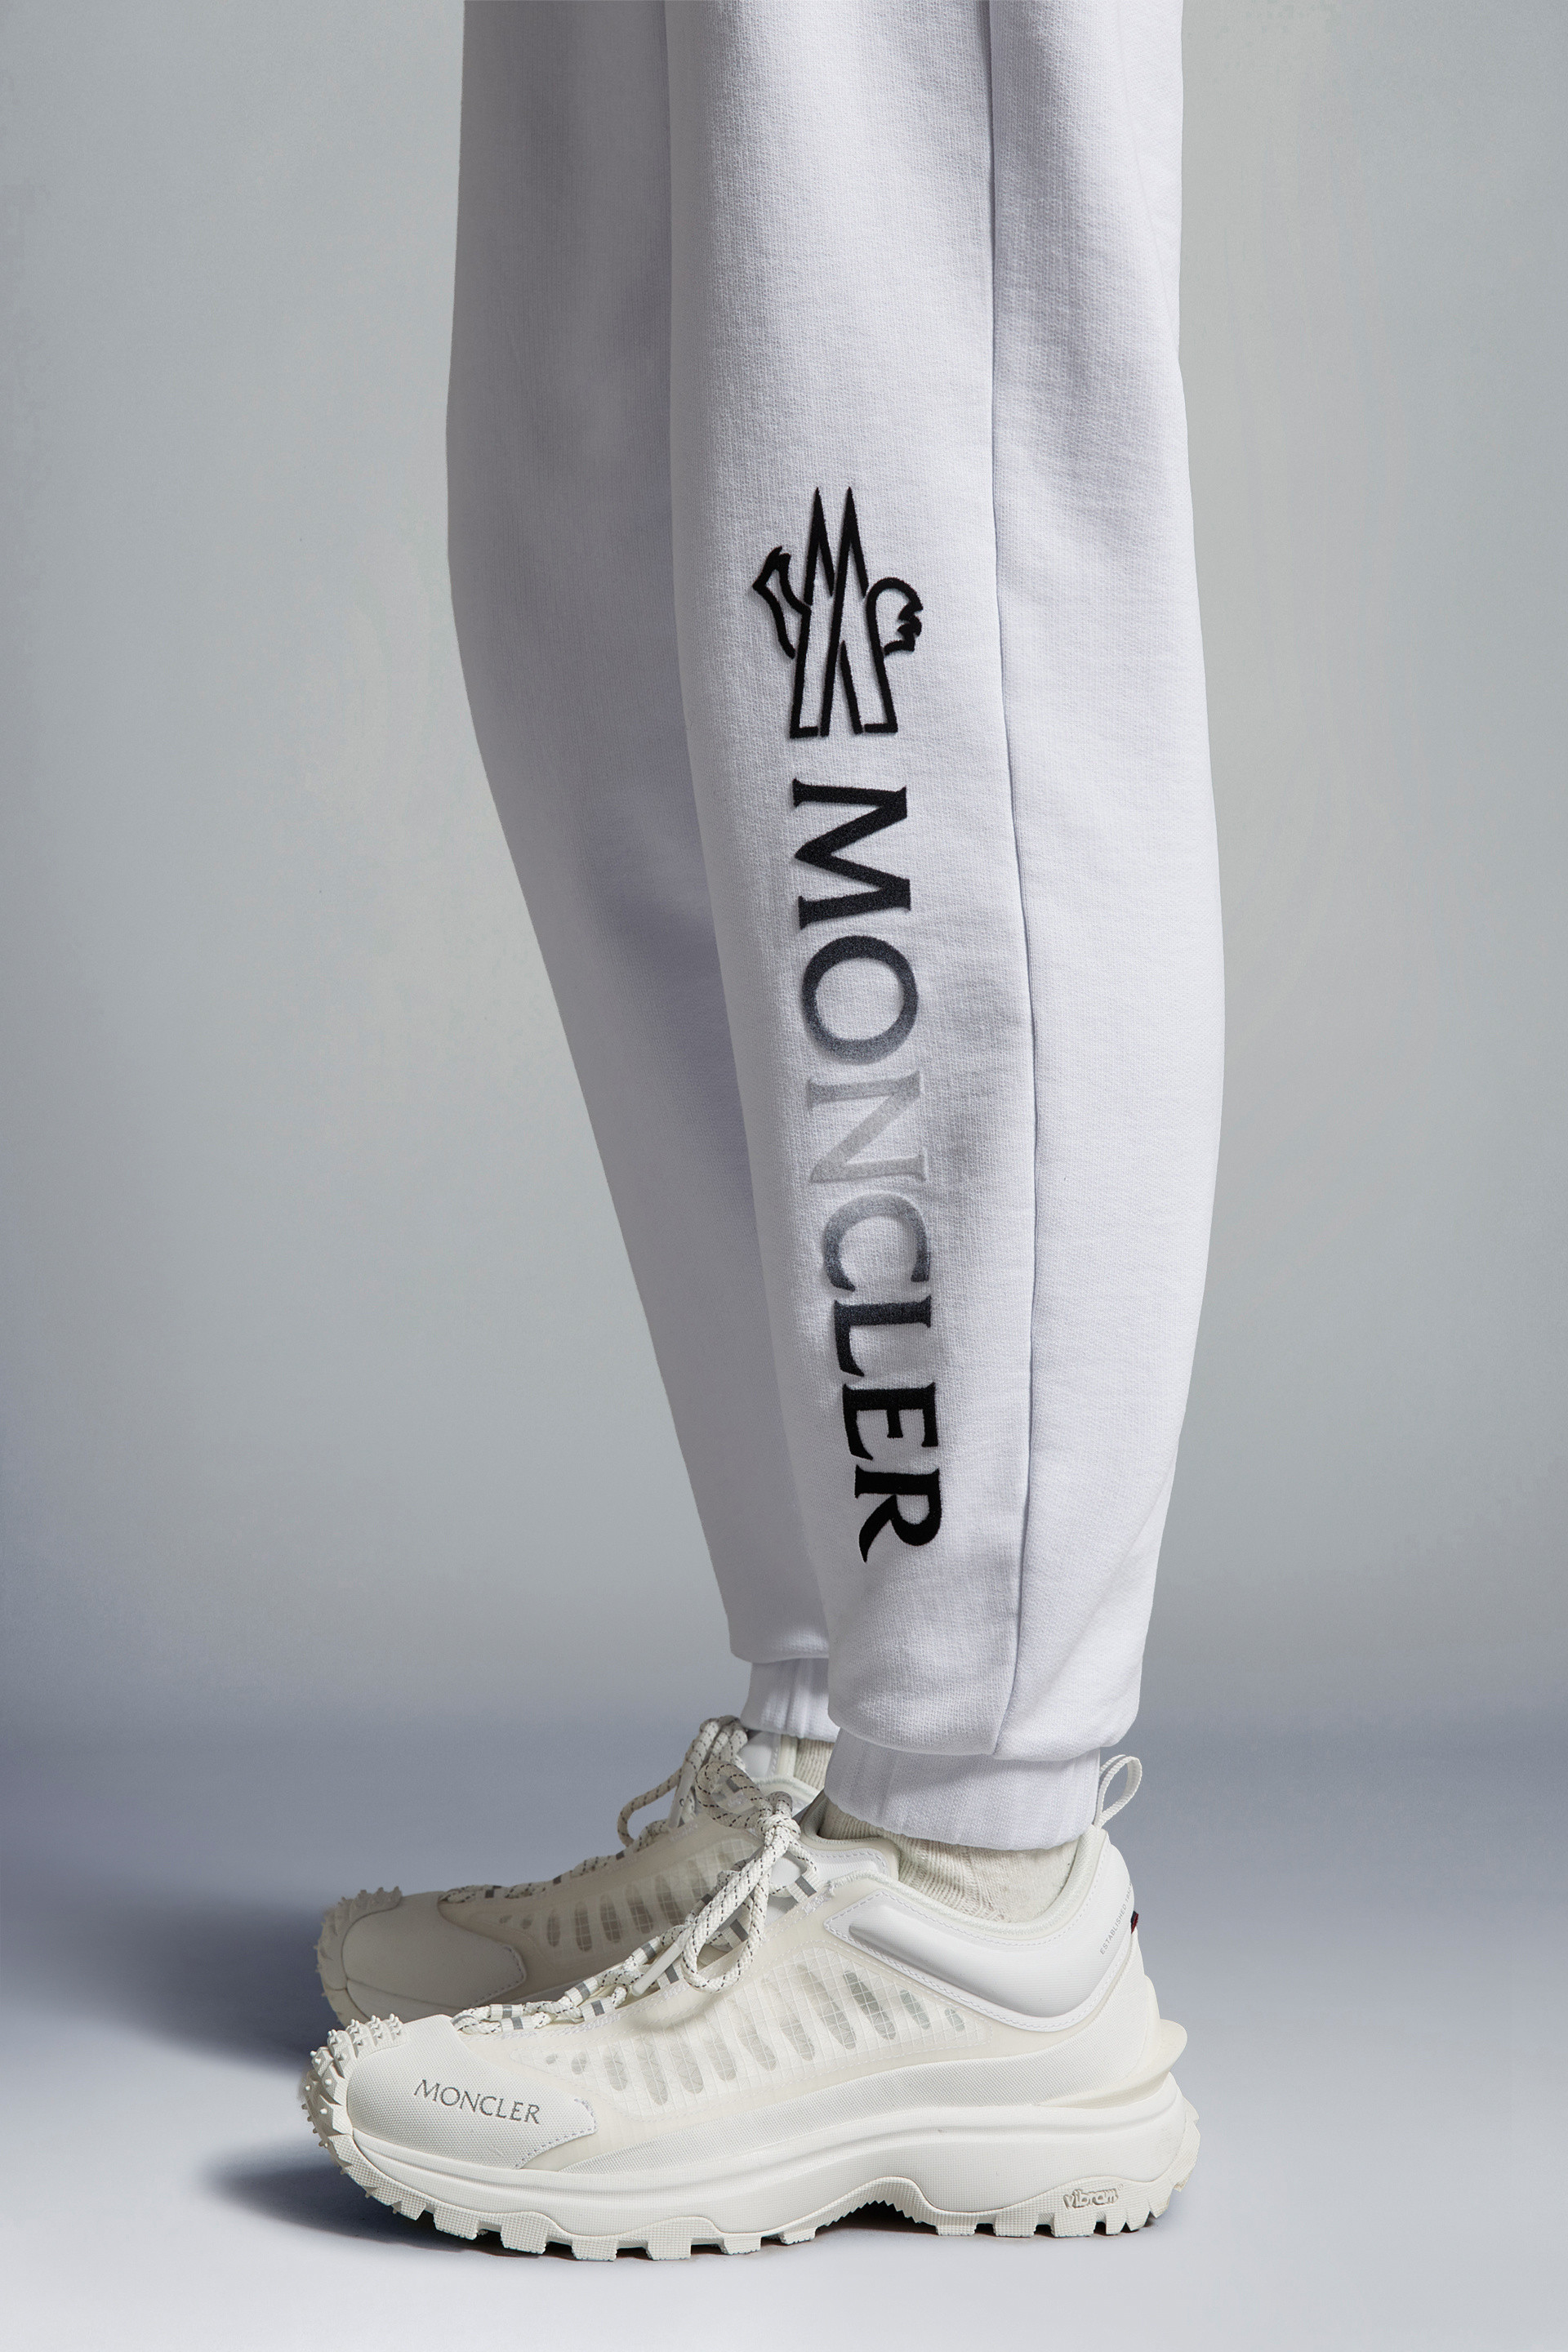 Pantalones deportivos Moncler - Pantalón Chándal Blanco Para Mujer -  B1093876860080948034